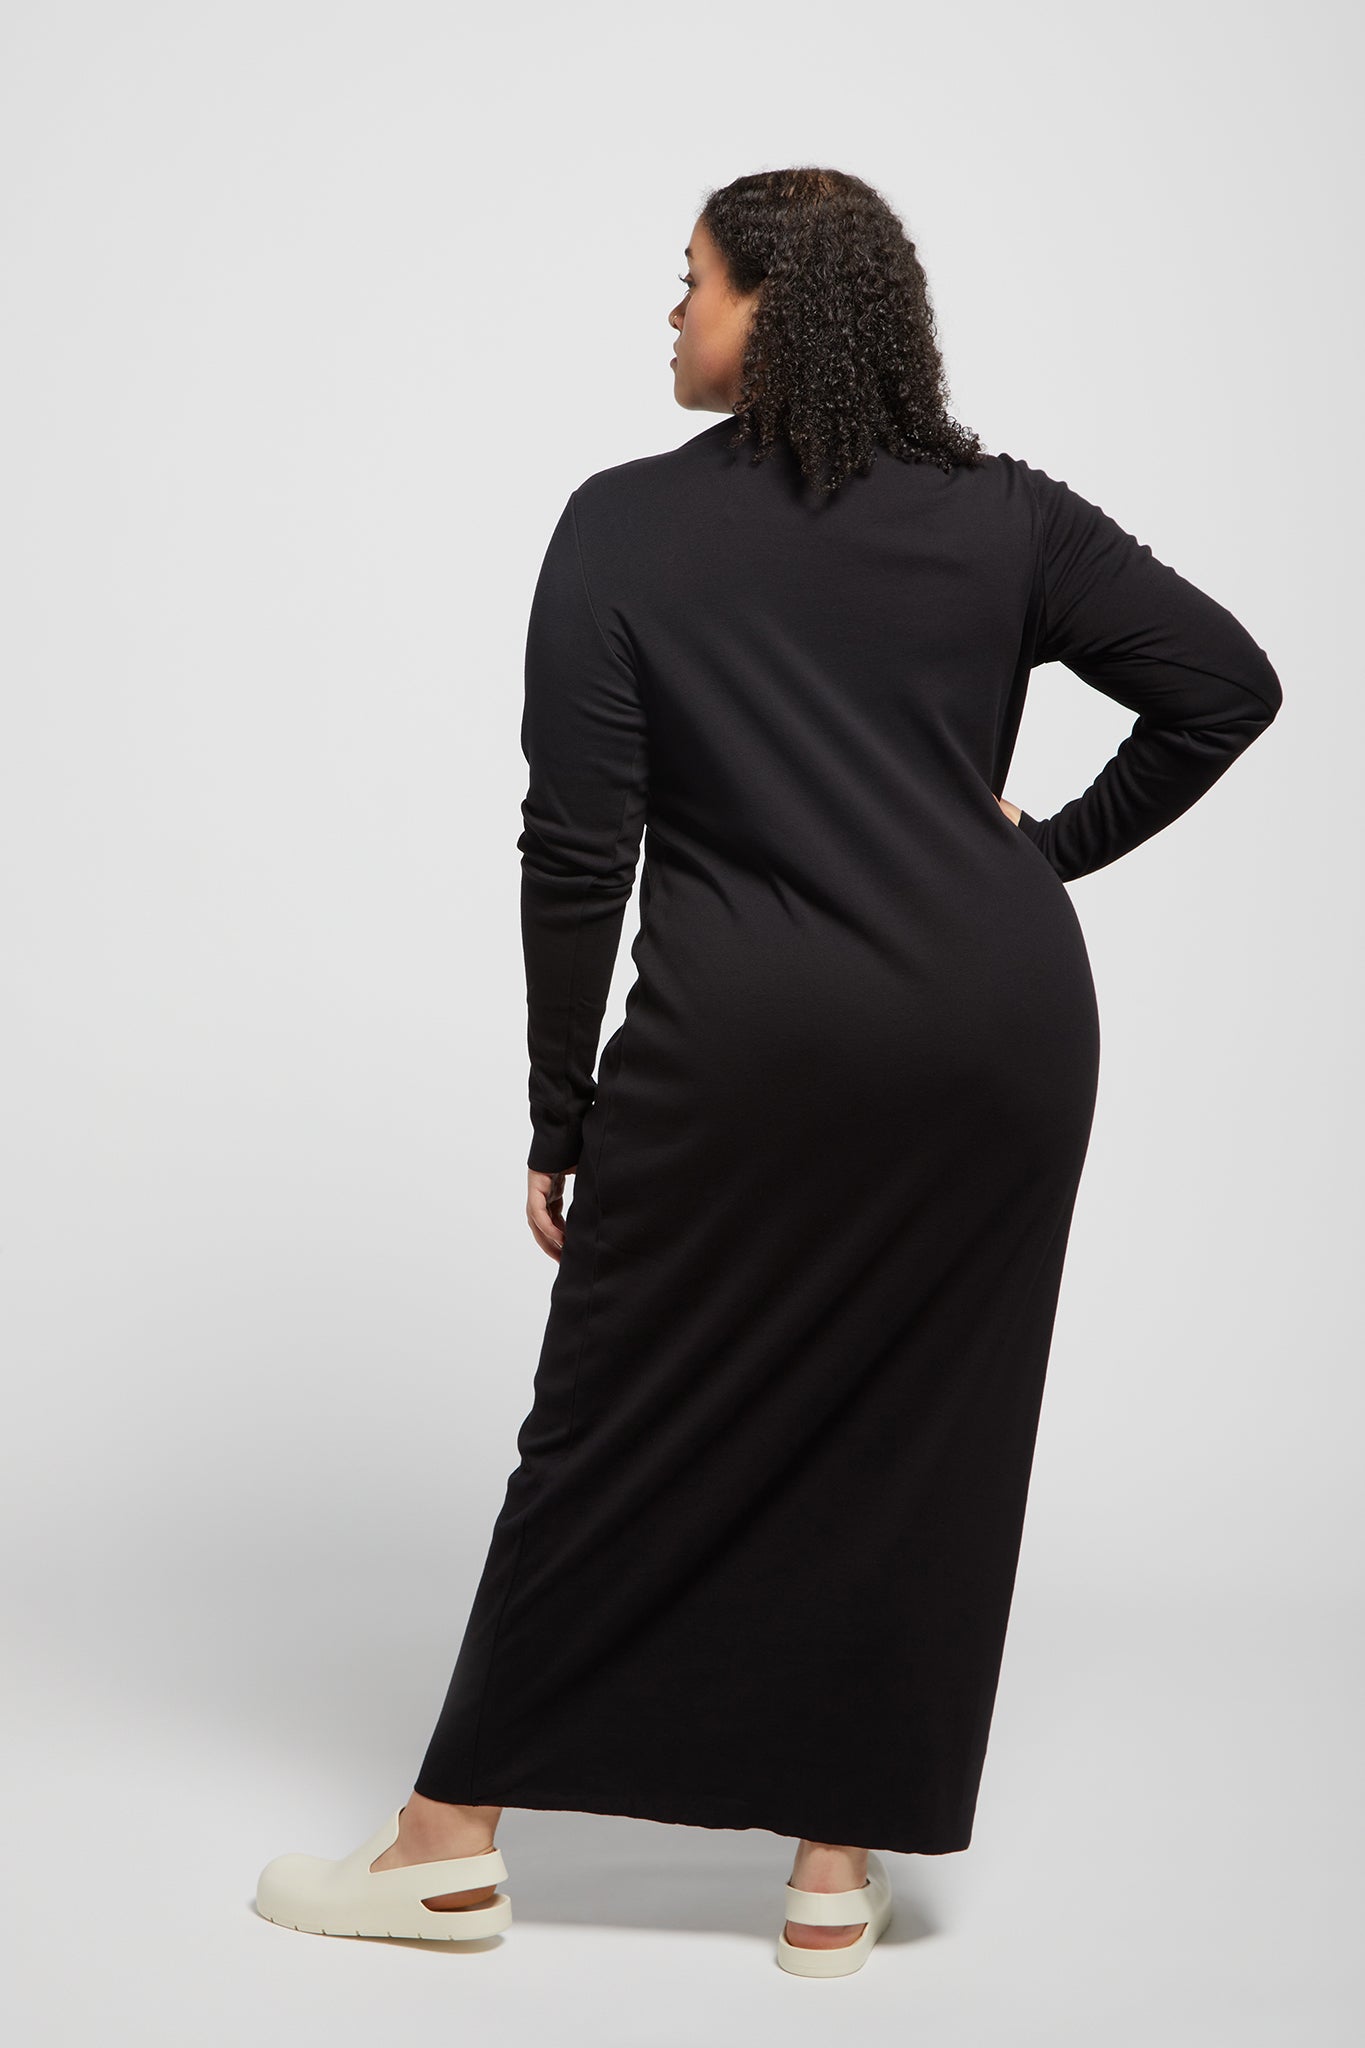 A.BCH A.14 Black Long Sleeve Skivvy Dress in Organic Cotton Rib